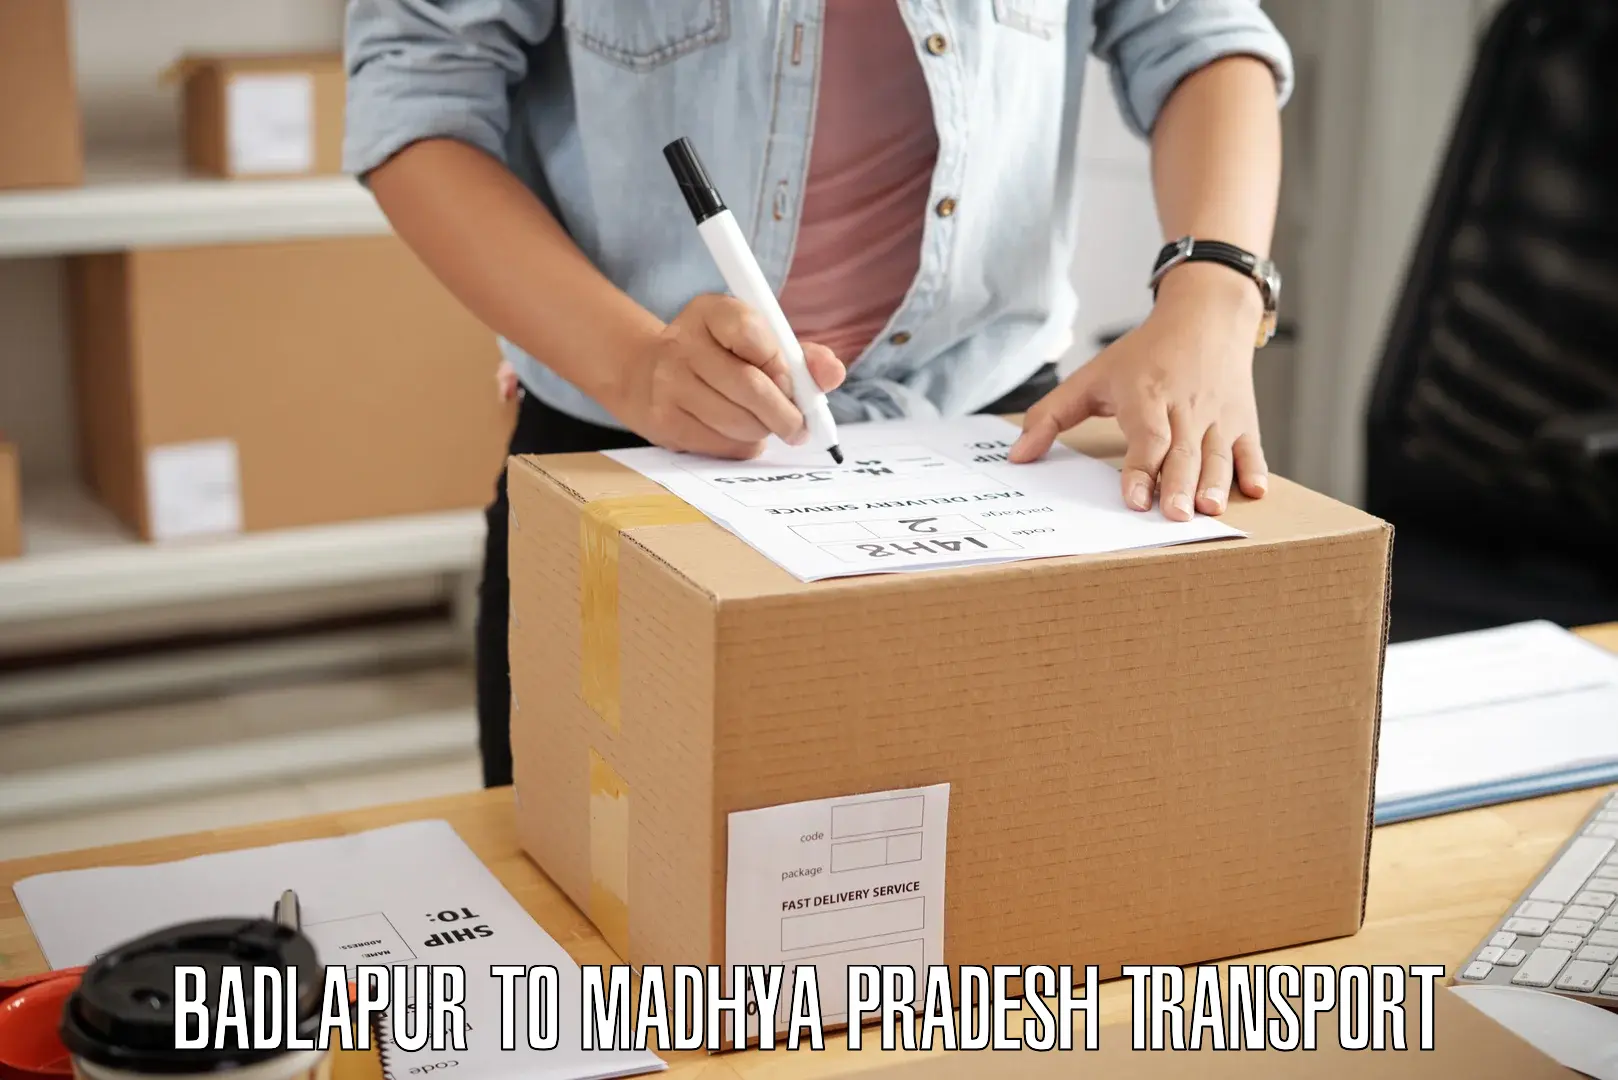 Online transport service Badlapur to Bajag